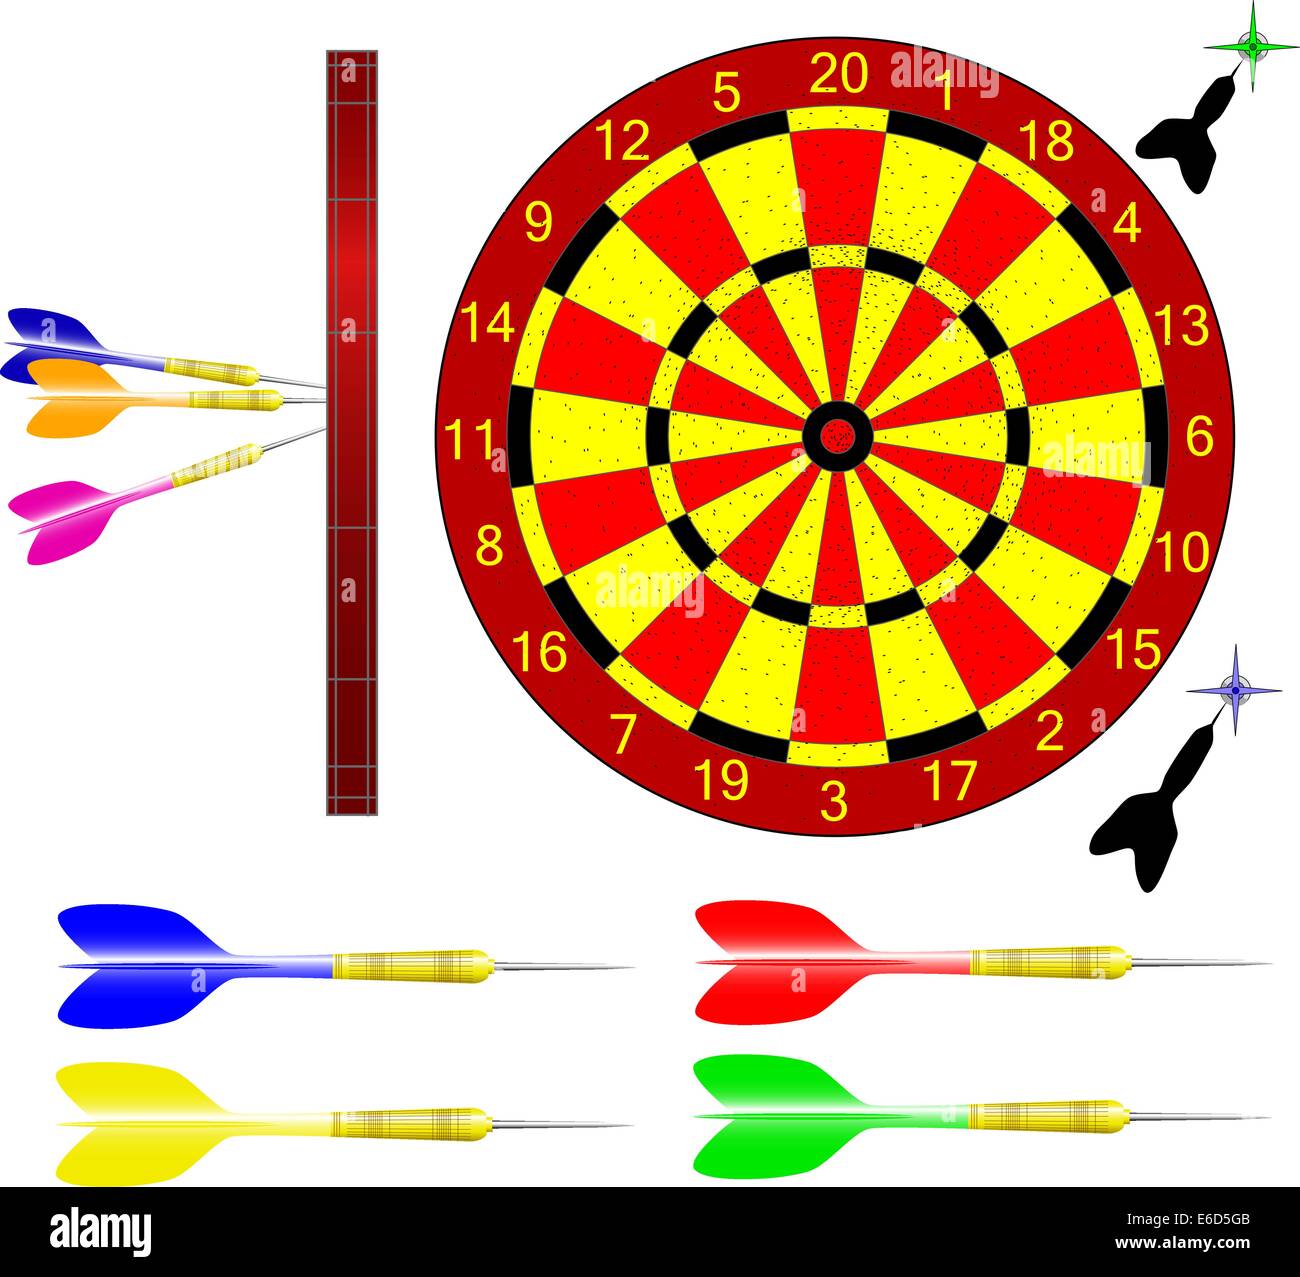 Illustrazione Vettoriale di freccette e dartboard Illustrazione Vettoriale